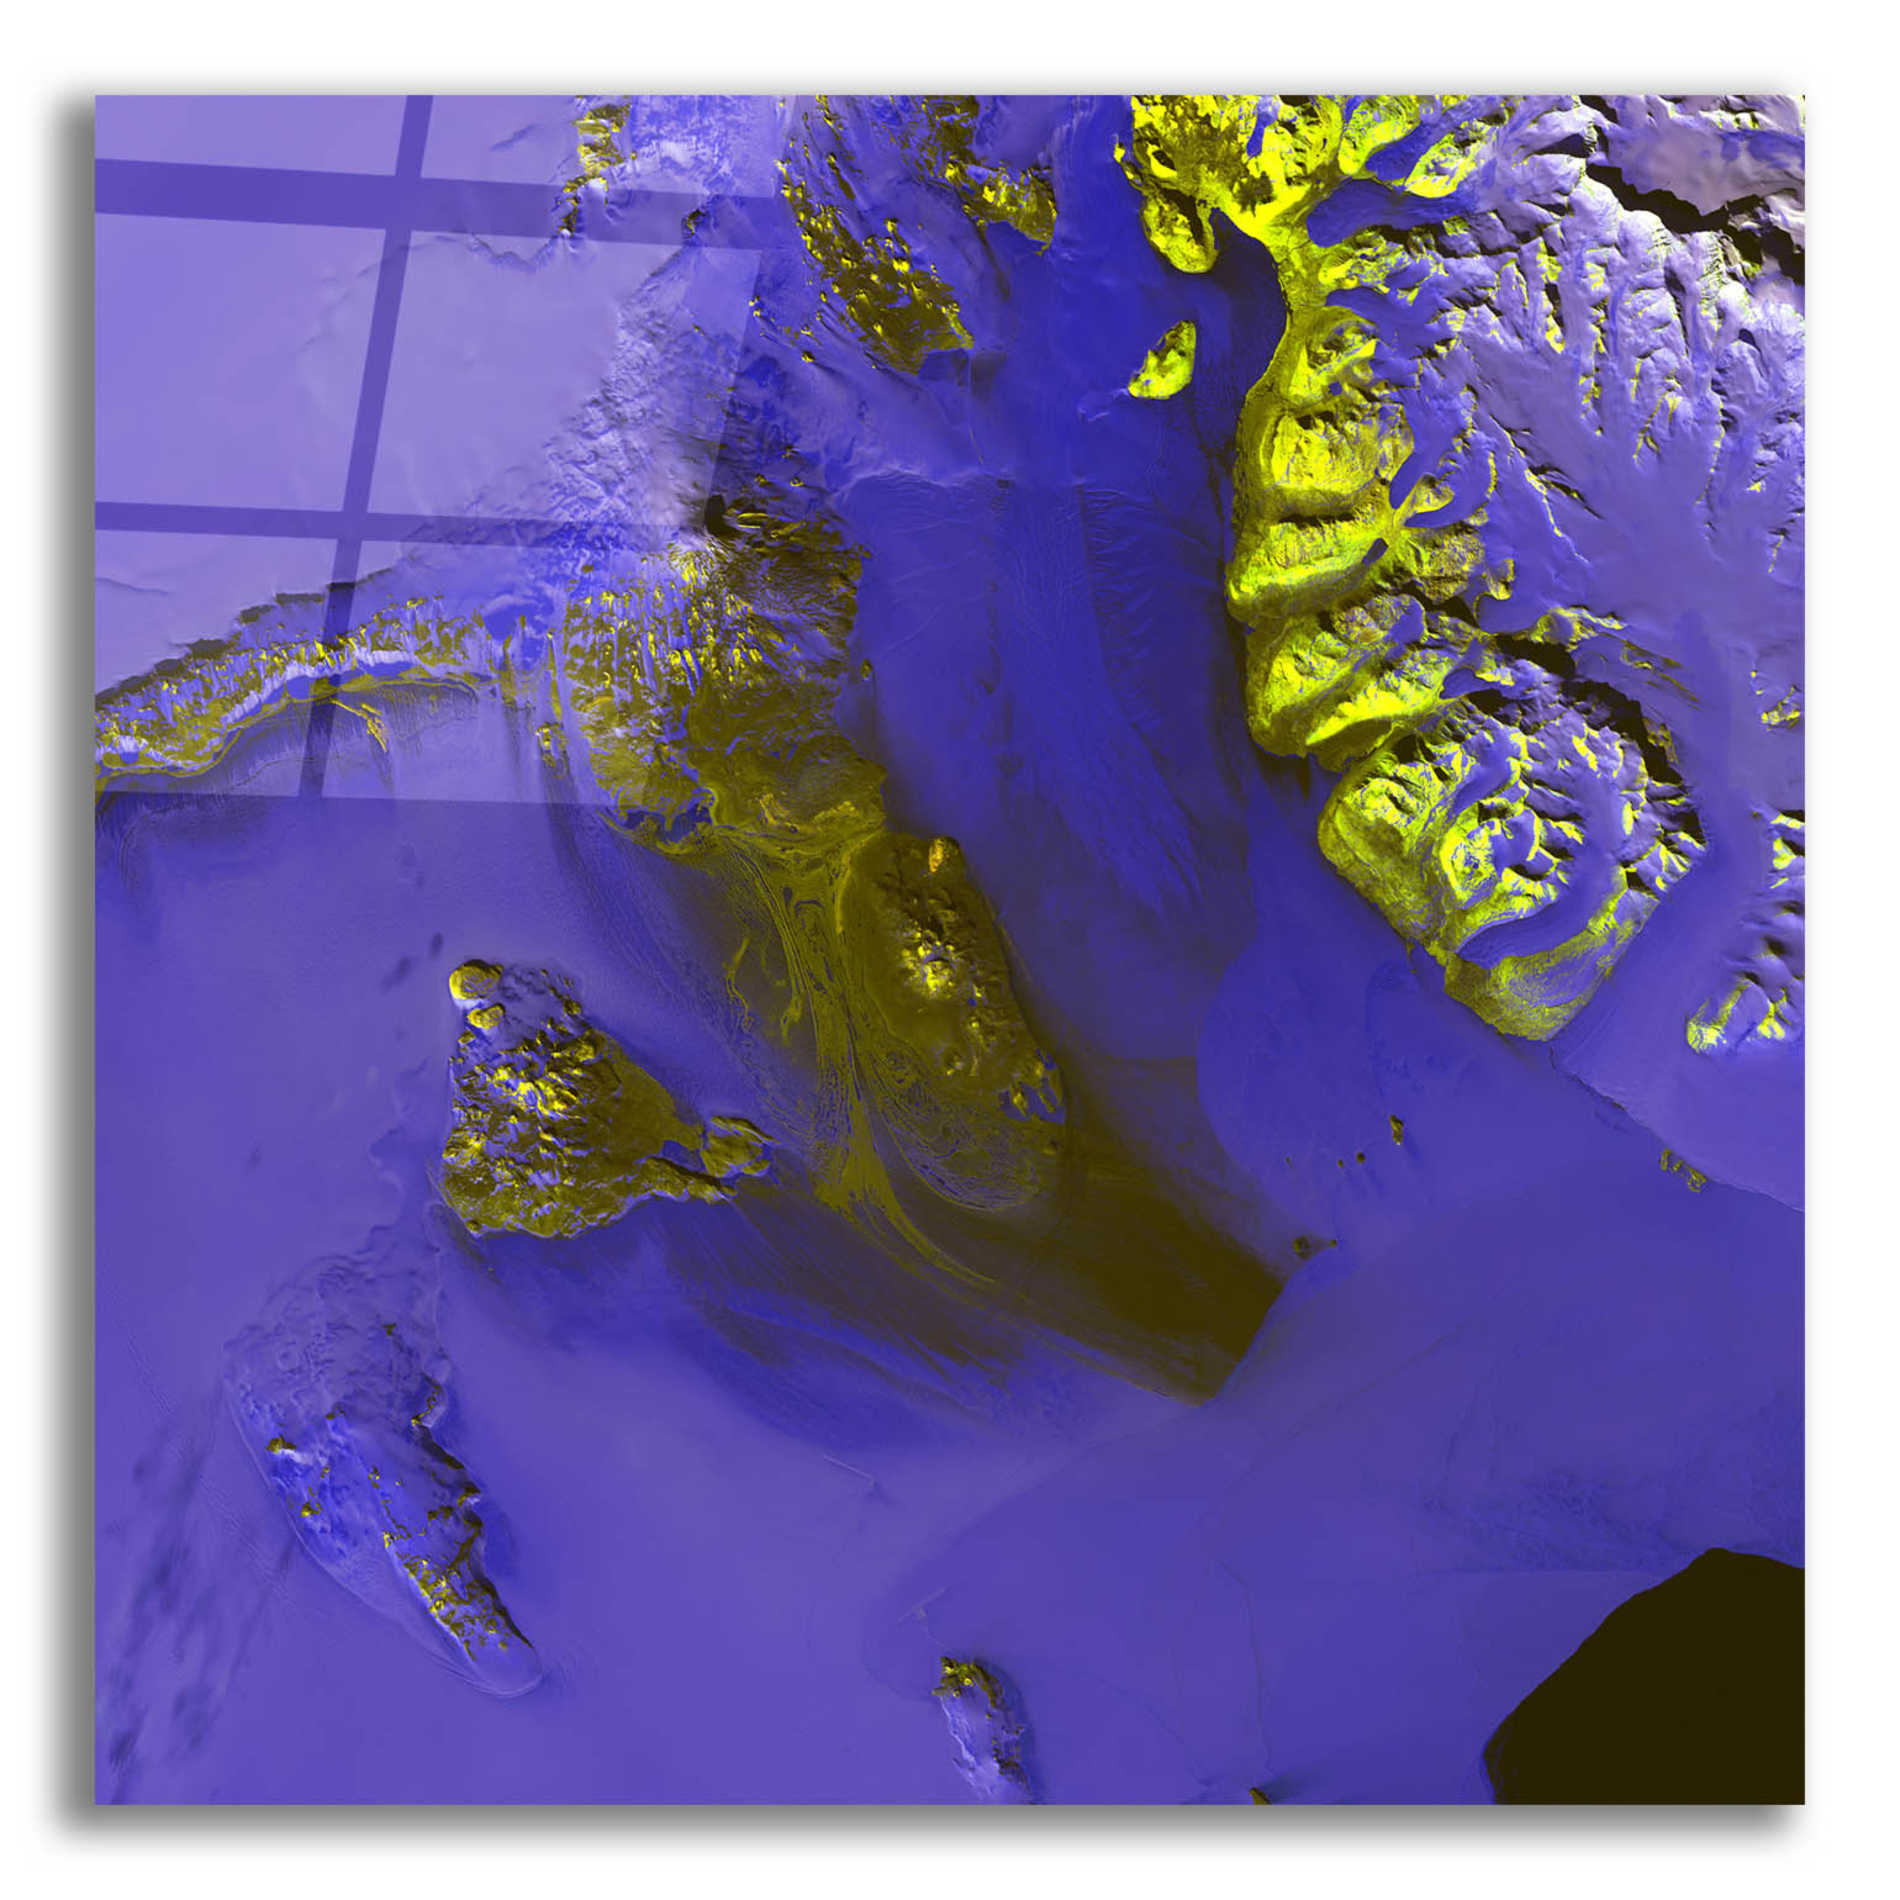 Epic Art 'Earth as Art: Koettlitz Glacier,' Acrylic Glass Wall Art,12x12x1.1x0,18x18x1.1x0,26x26x1.74x0,37x37x1.74x0